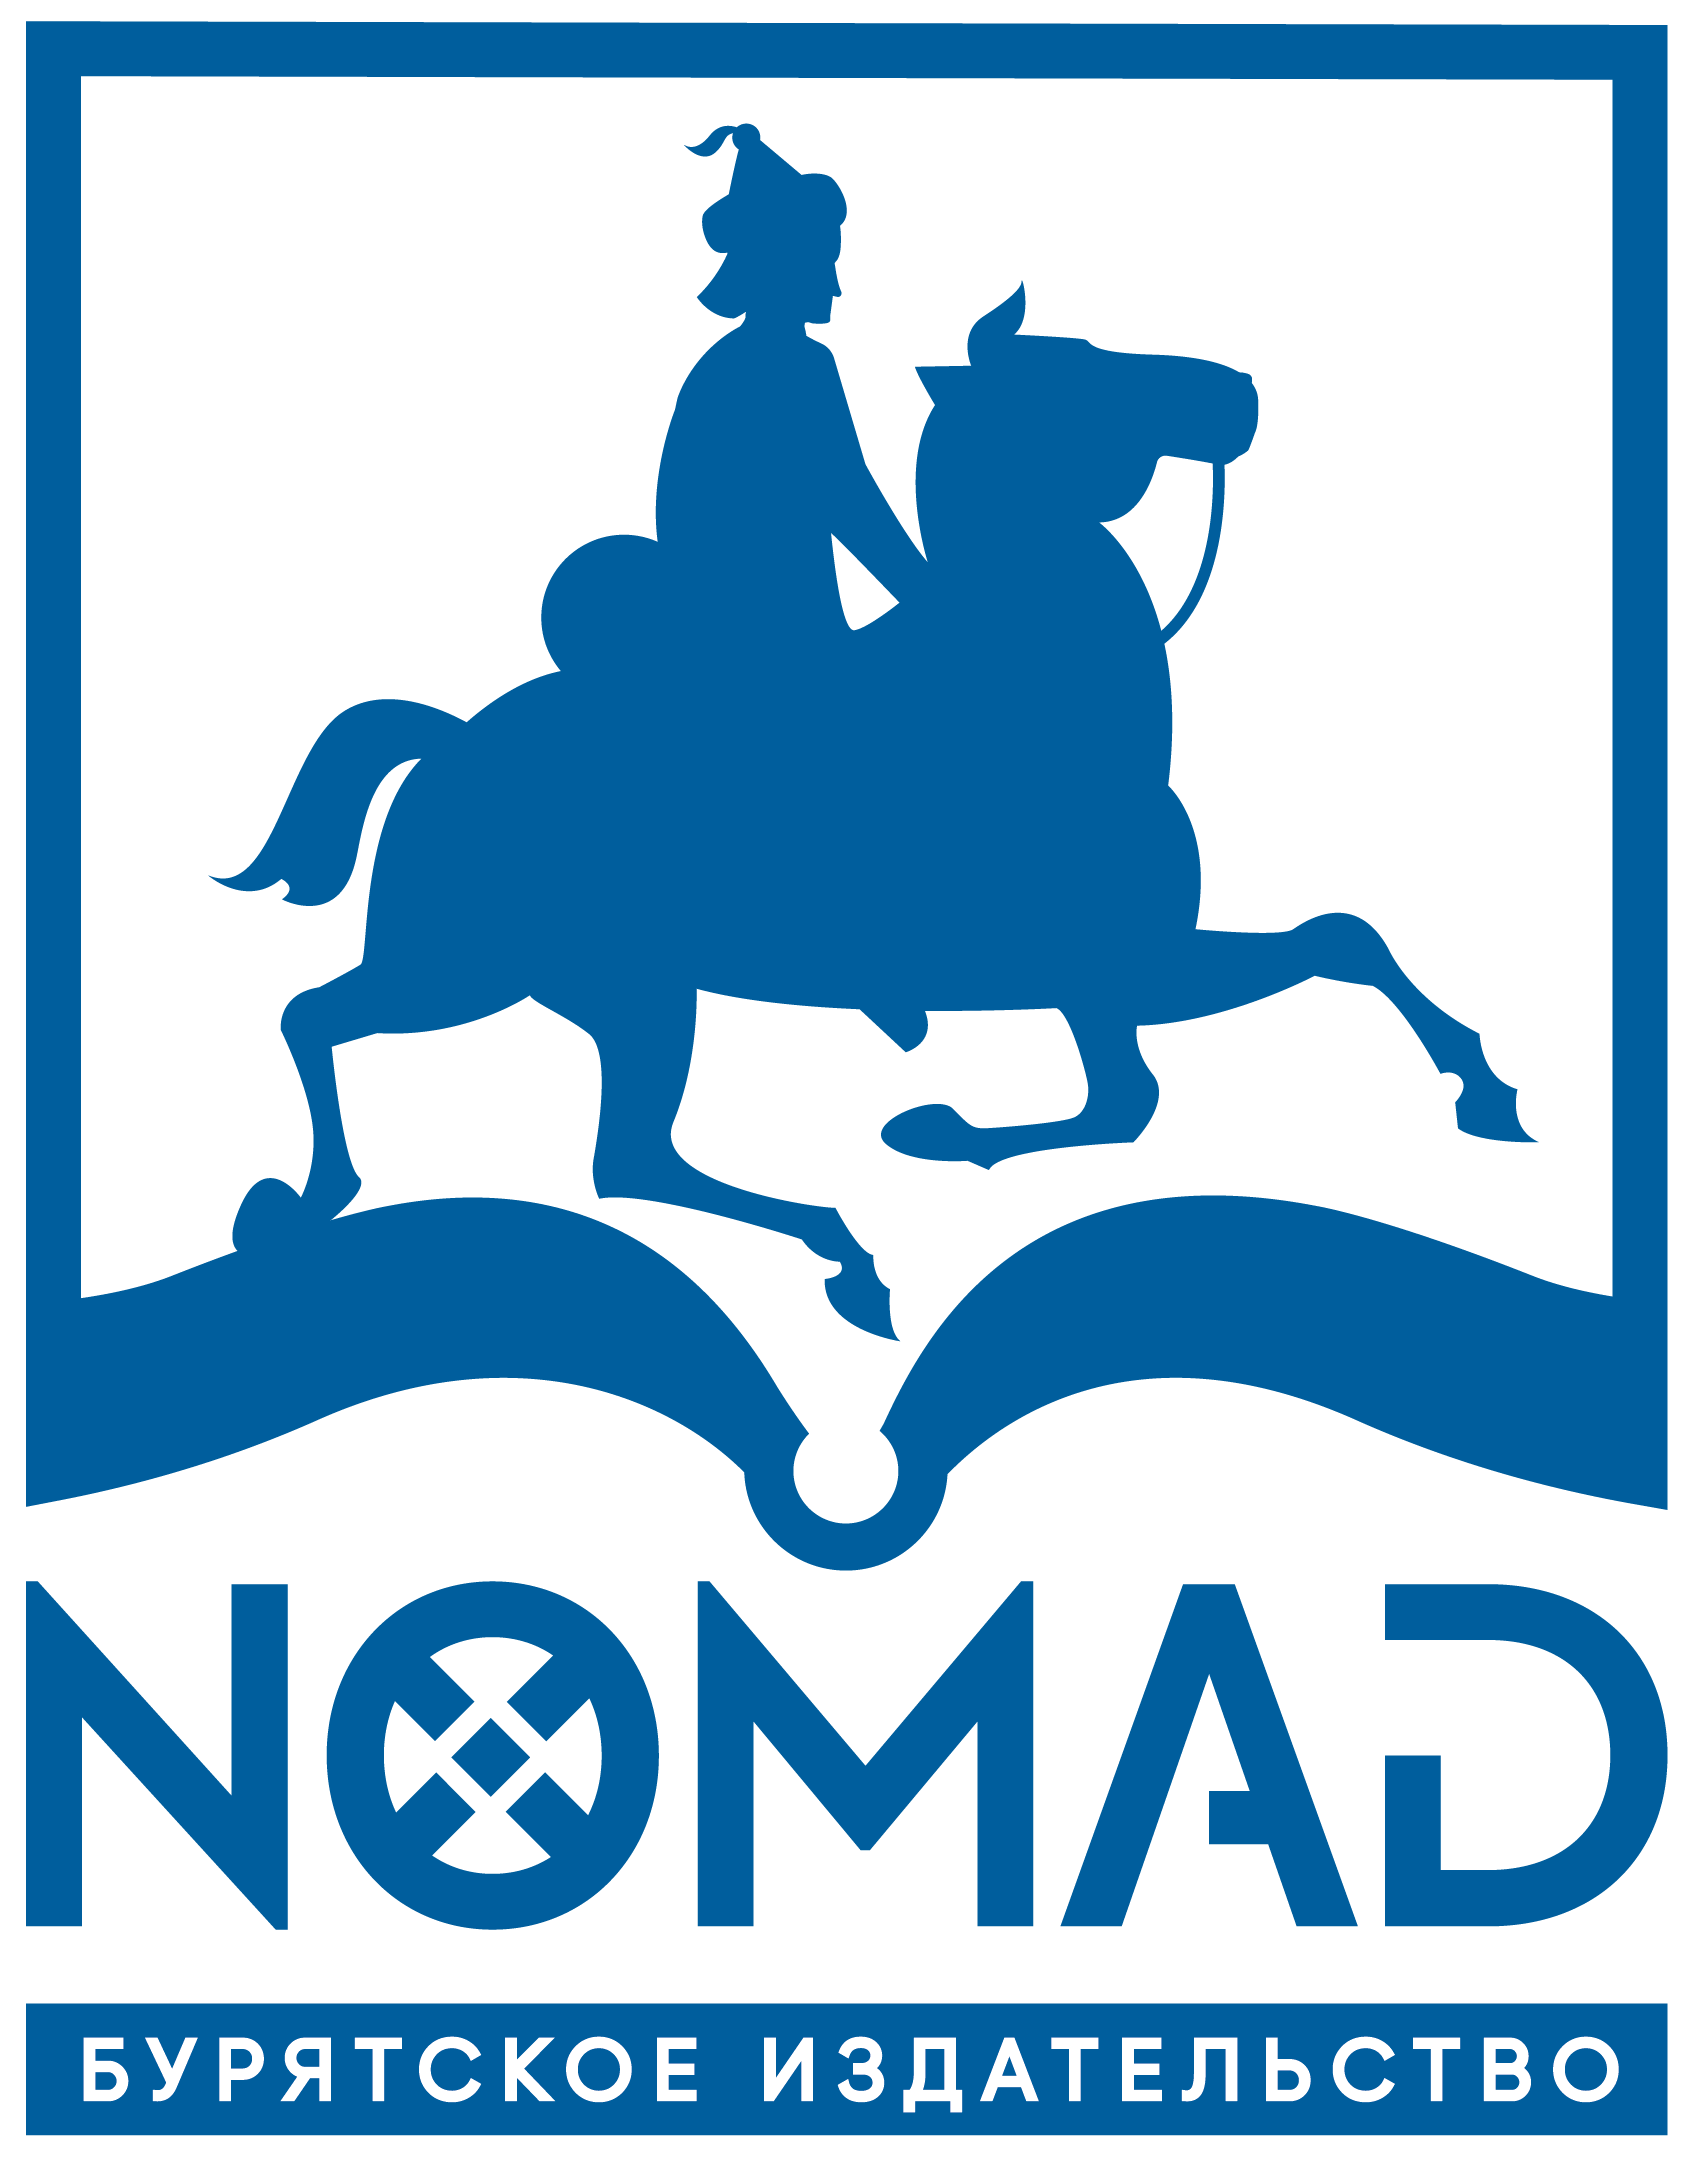 Логотип Издательство Номад